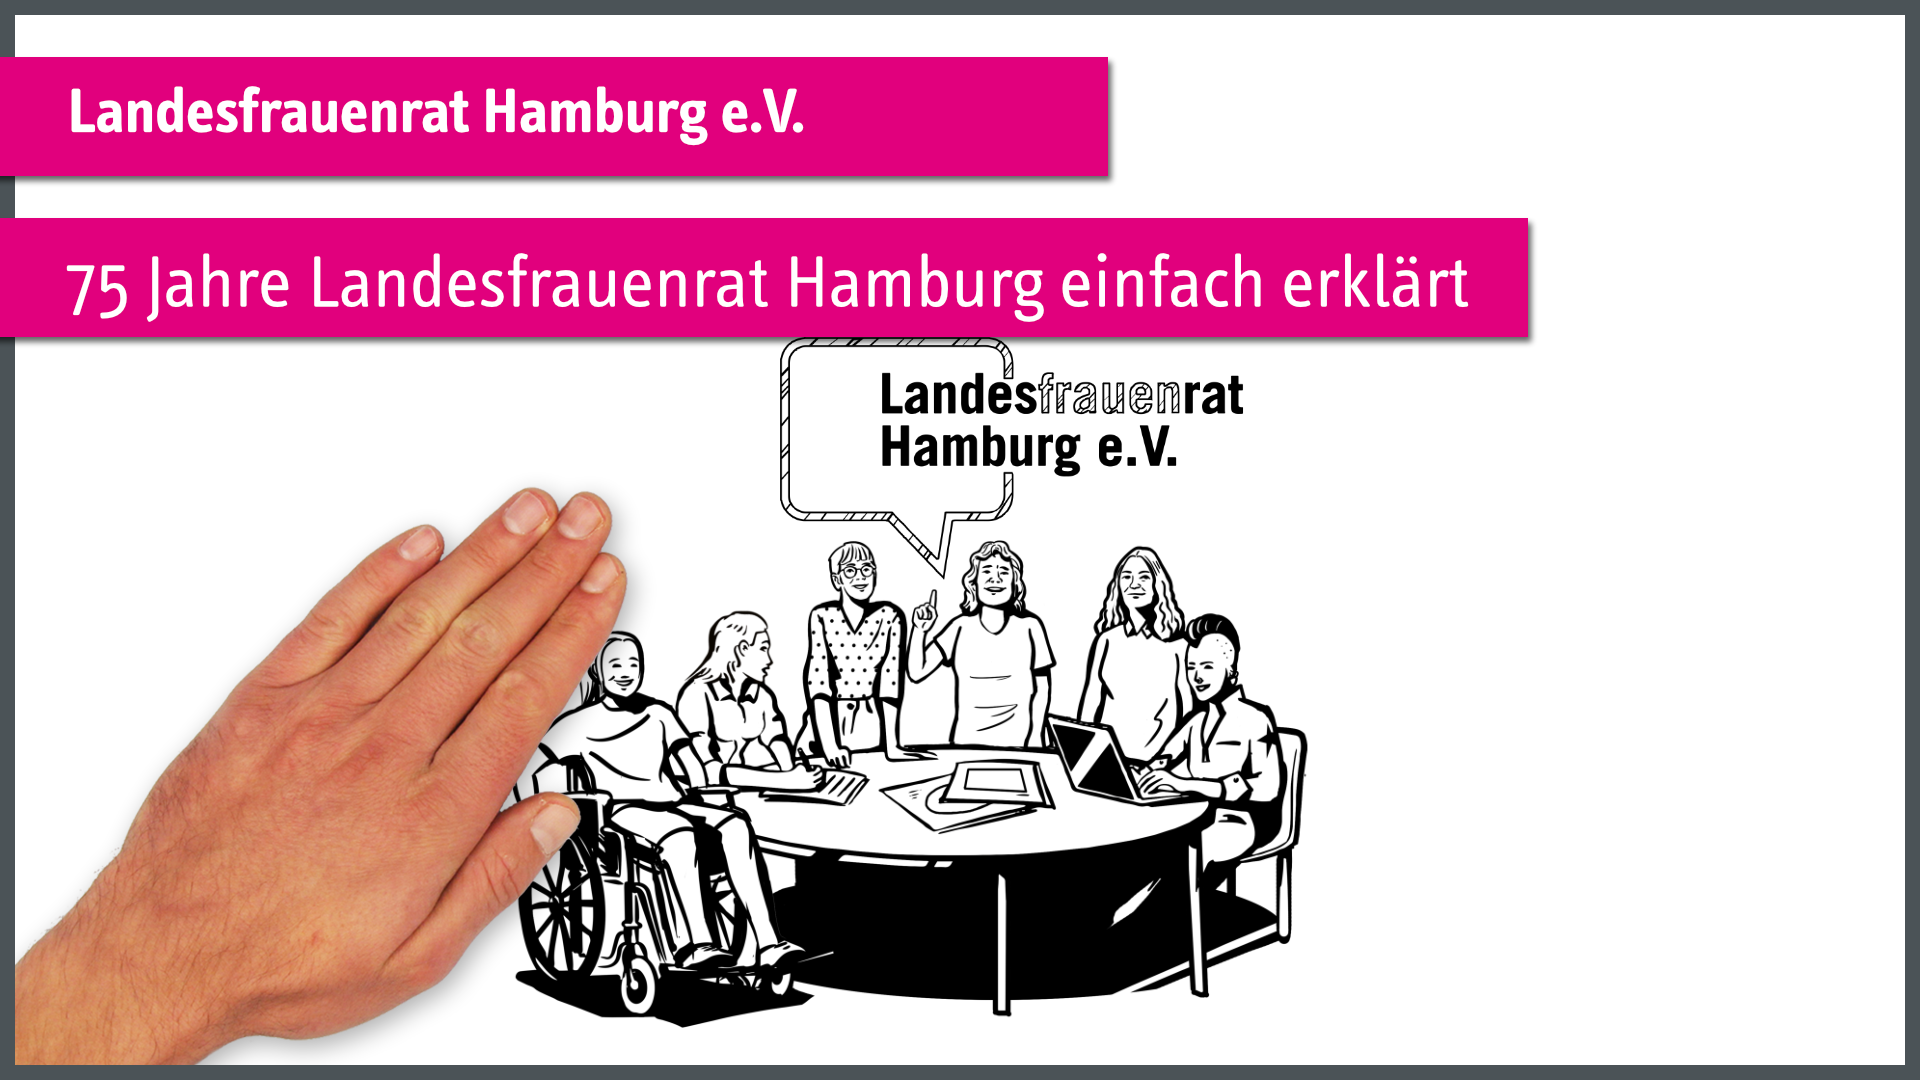 "75 Jahre Landesfrauenrat Hamburg erklärt" 